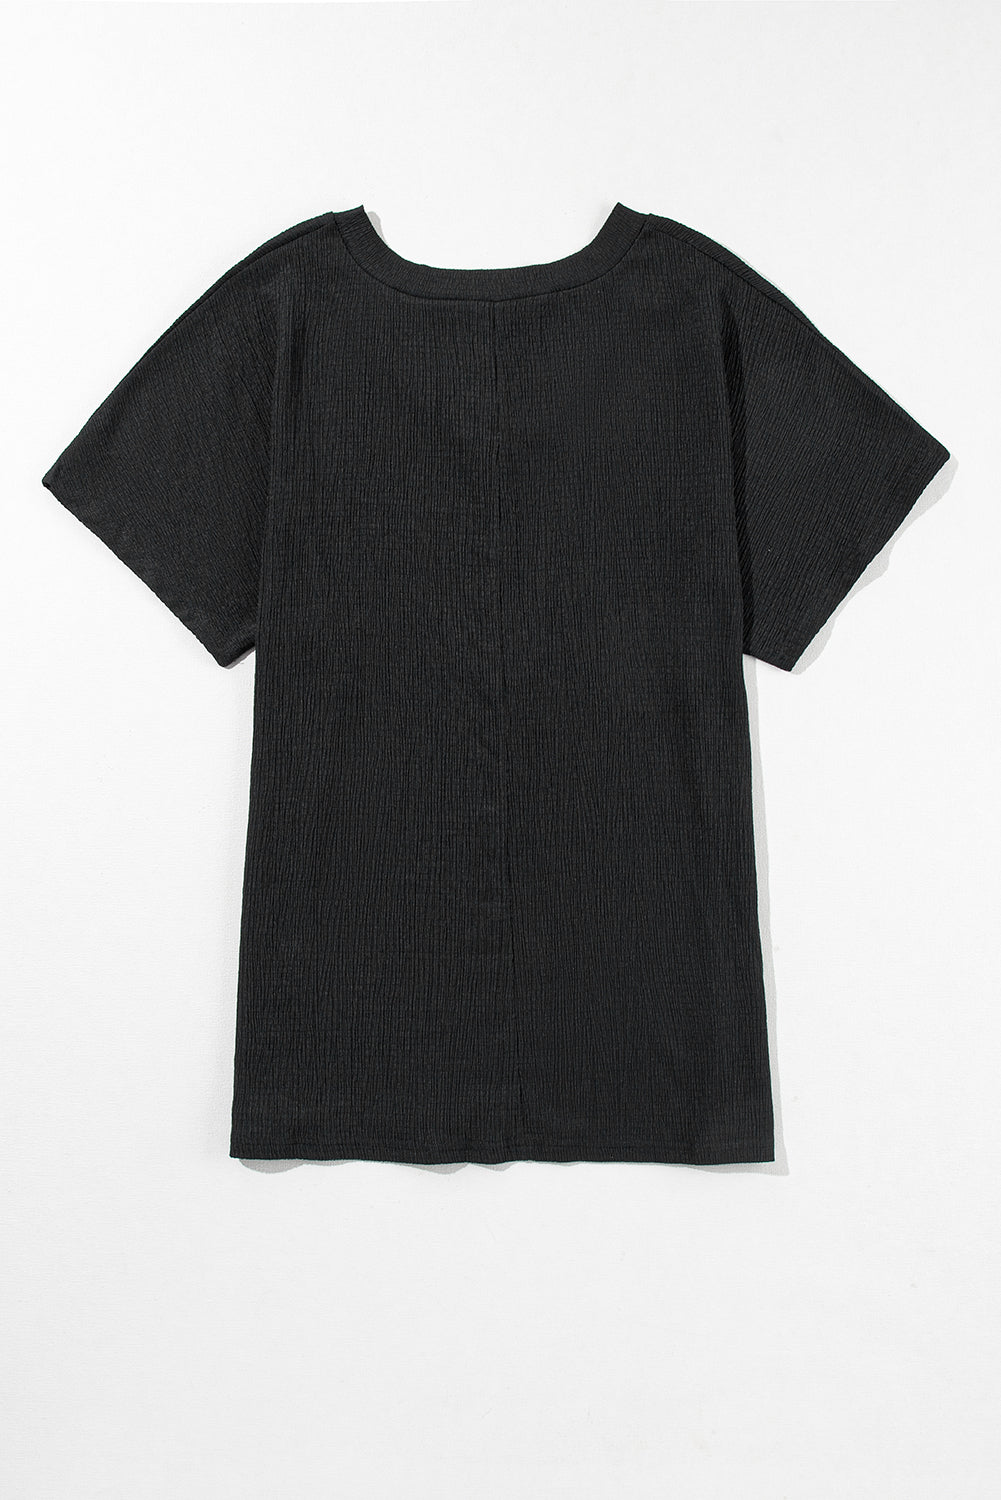 Black Crinkled V Neck Wide Sleeve T-shirt